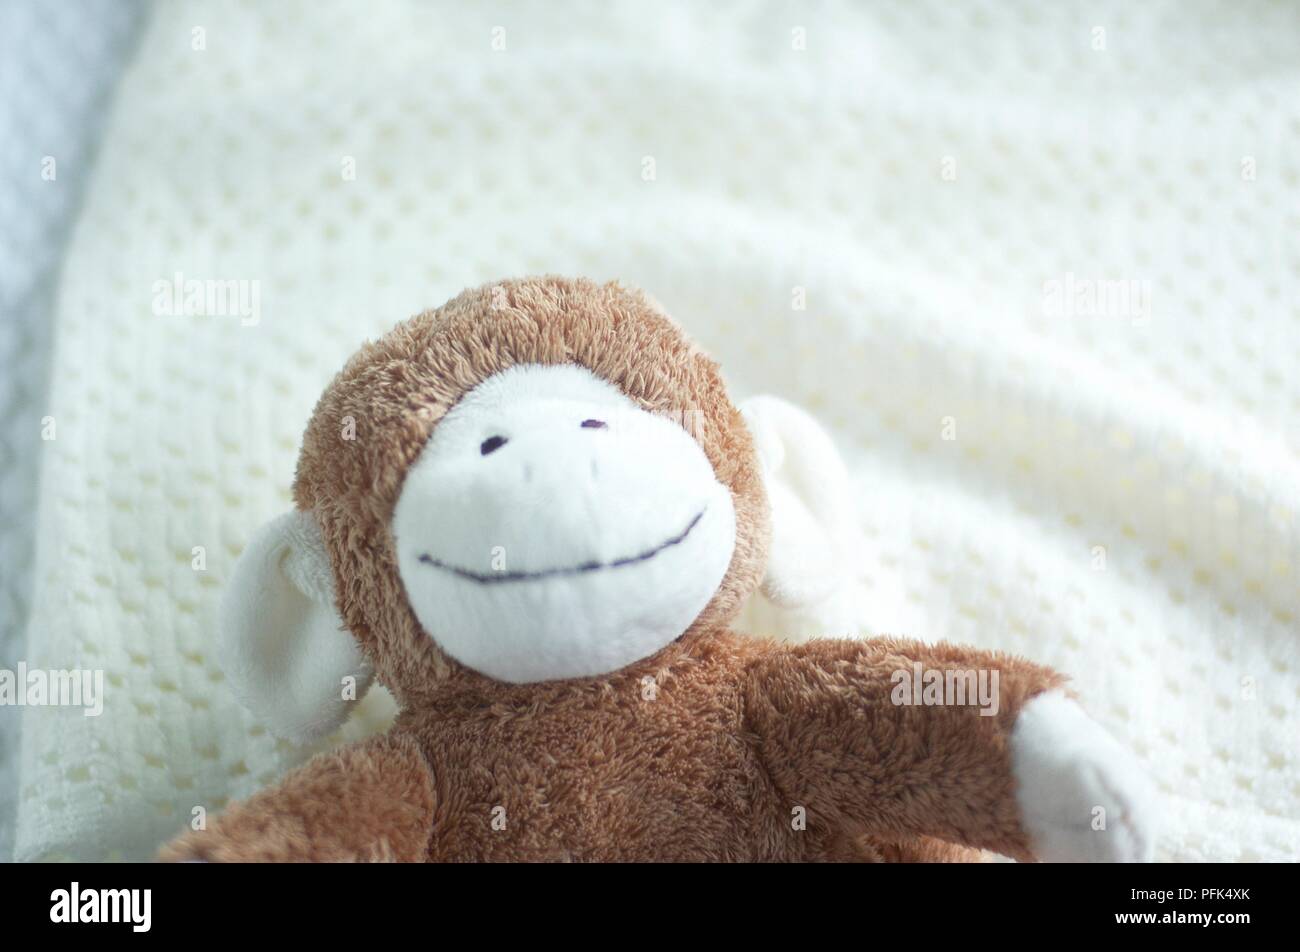 Stuffed monkey toy on white blanket, close-up Stock Photo